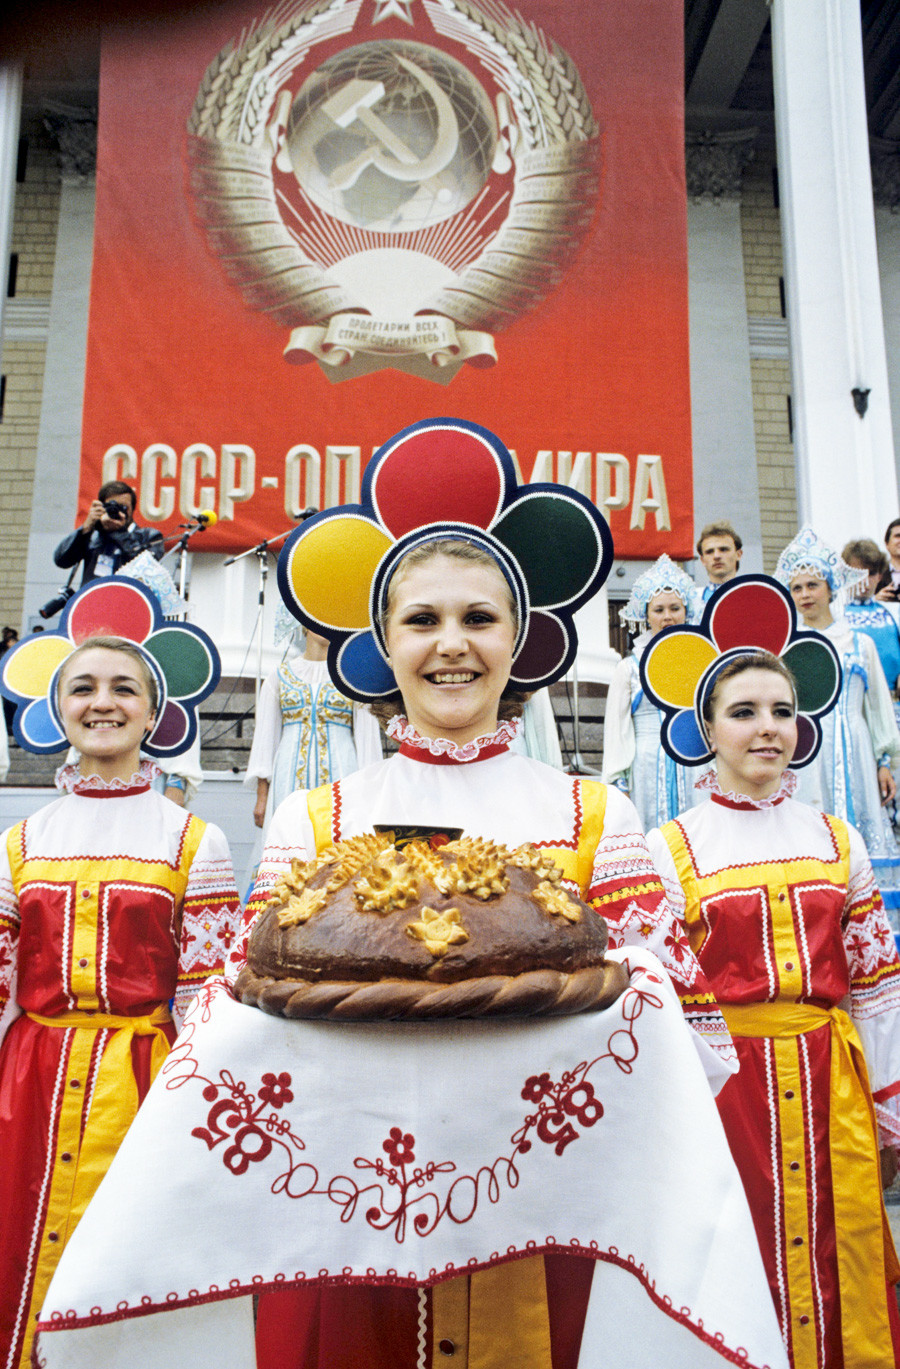 Открытие клуба делегации СССР на XII Всемирном фестивале молодежи и студентов, 1985. Гостей встречают хлебом и солью на расшитом полотенце. 